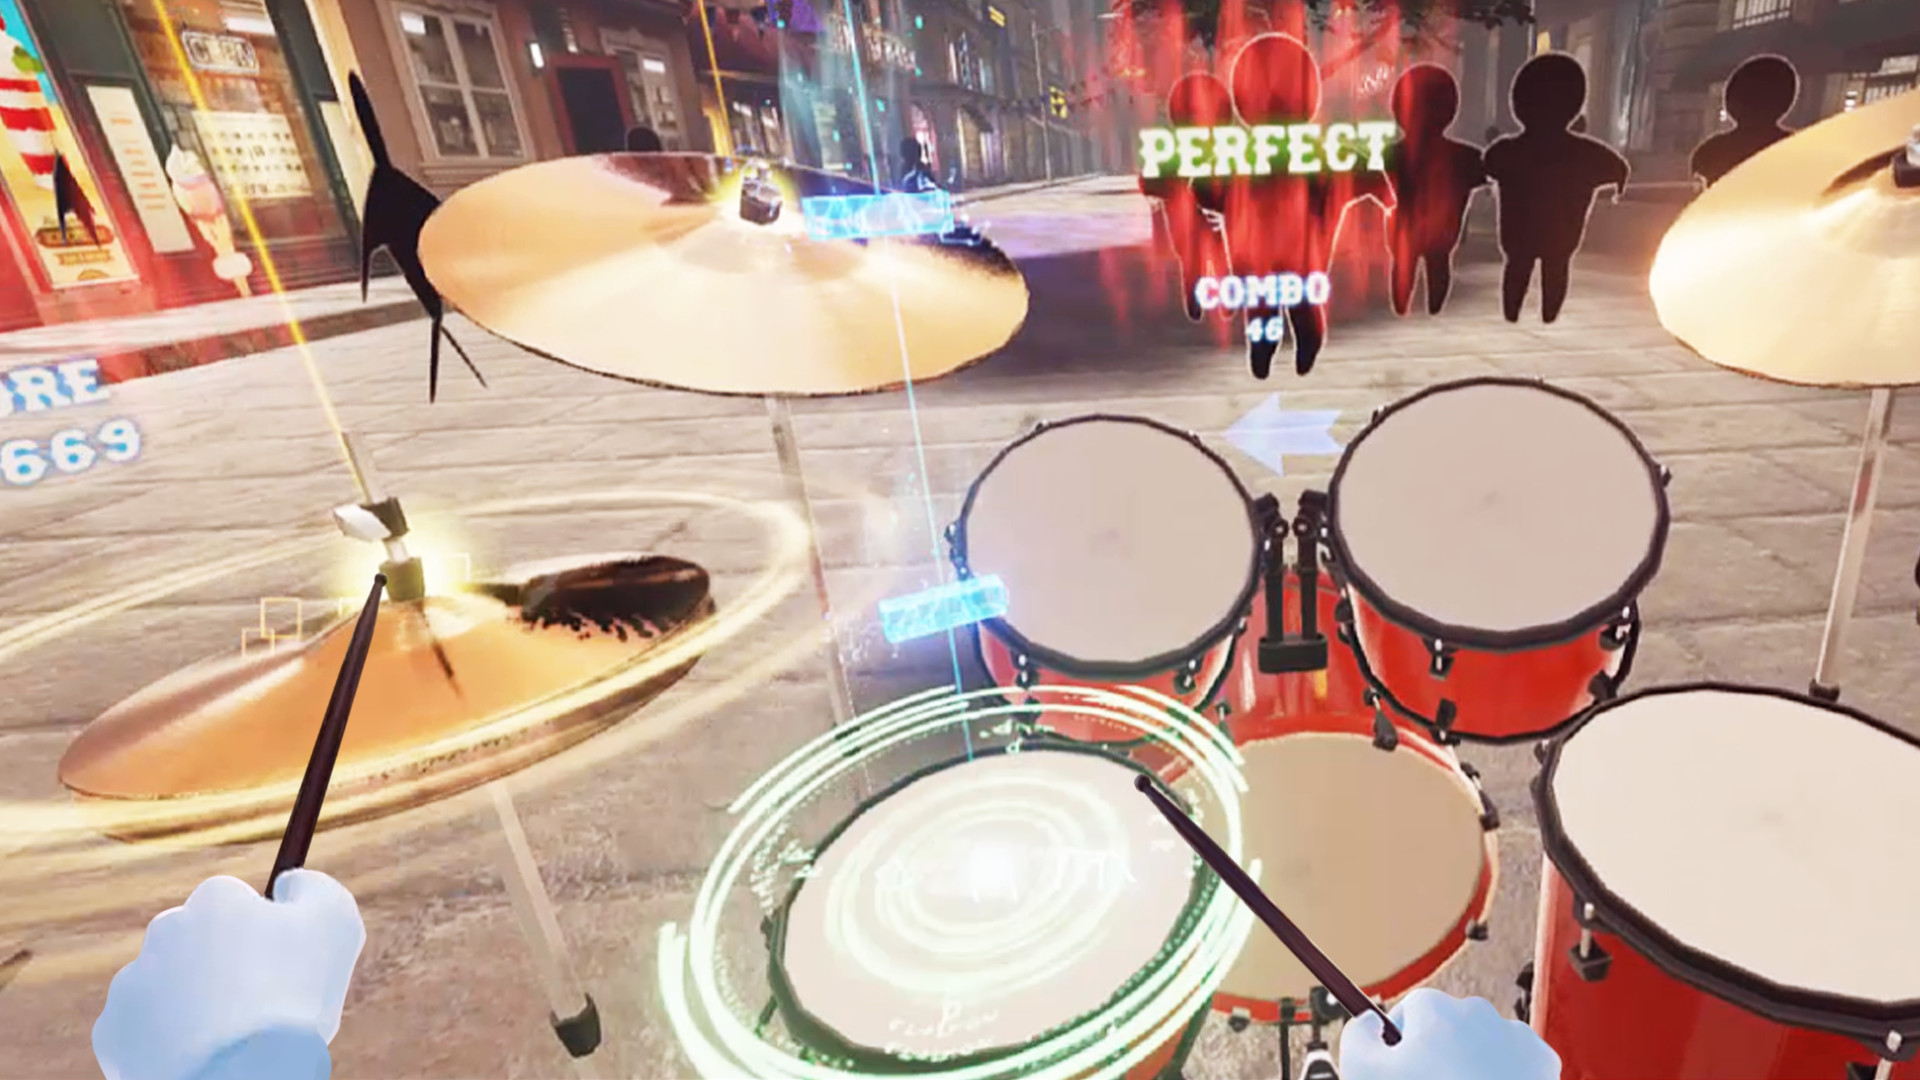 Drummer Talent VR on Steam